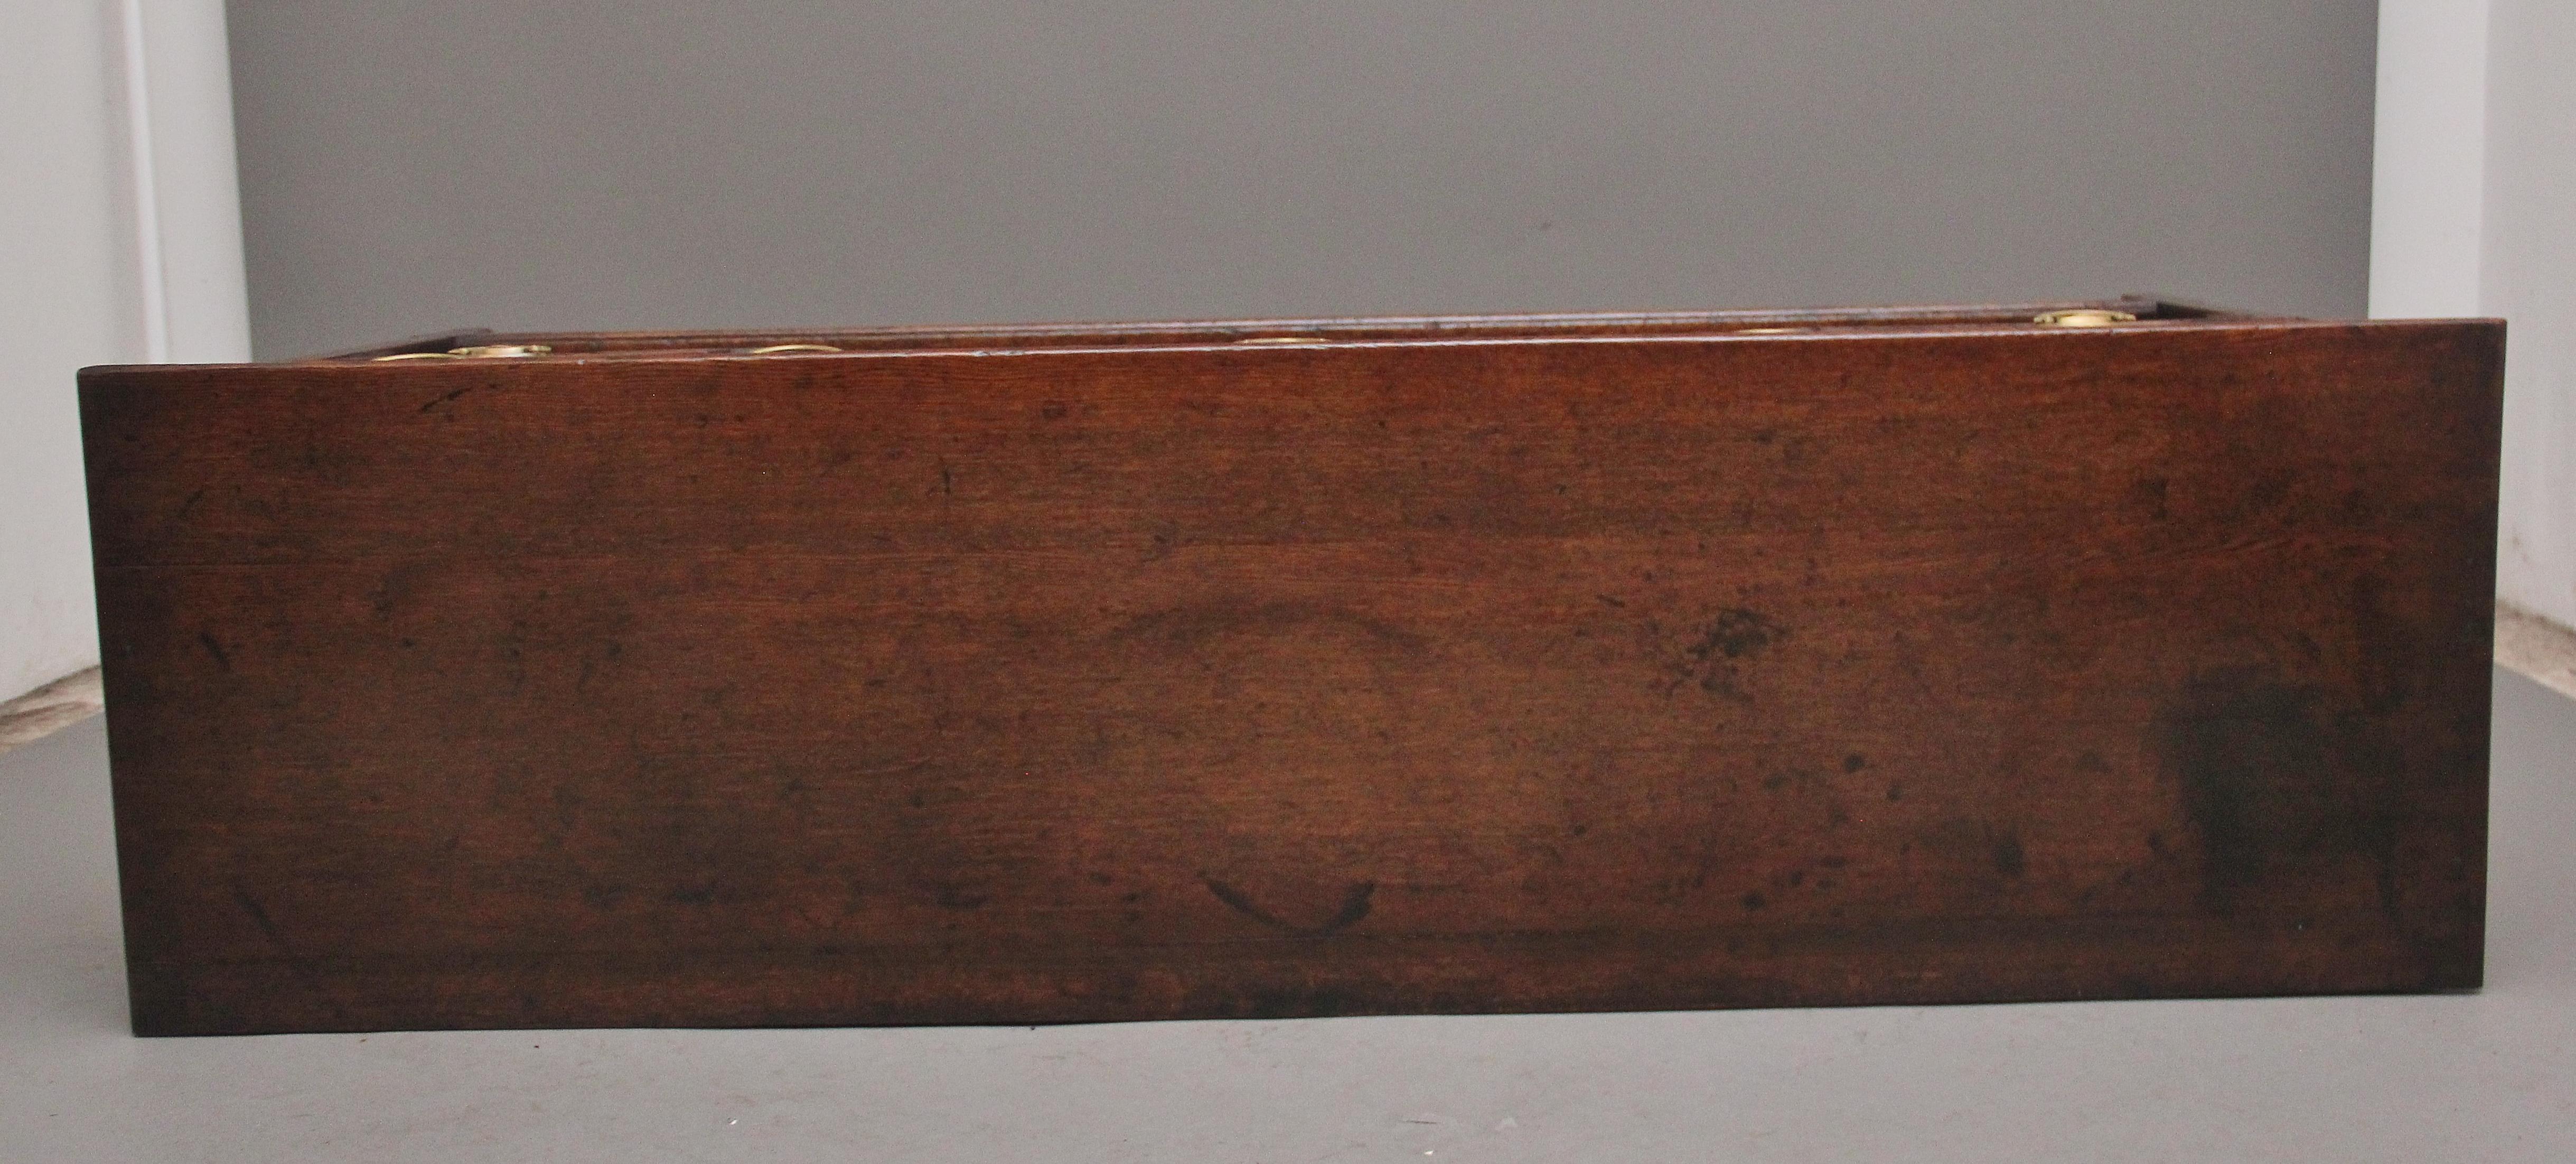 Early 19th Century oak dresser base For Sale 2